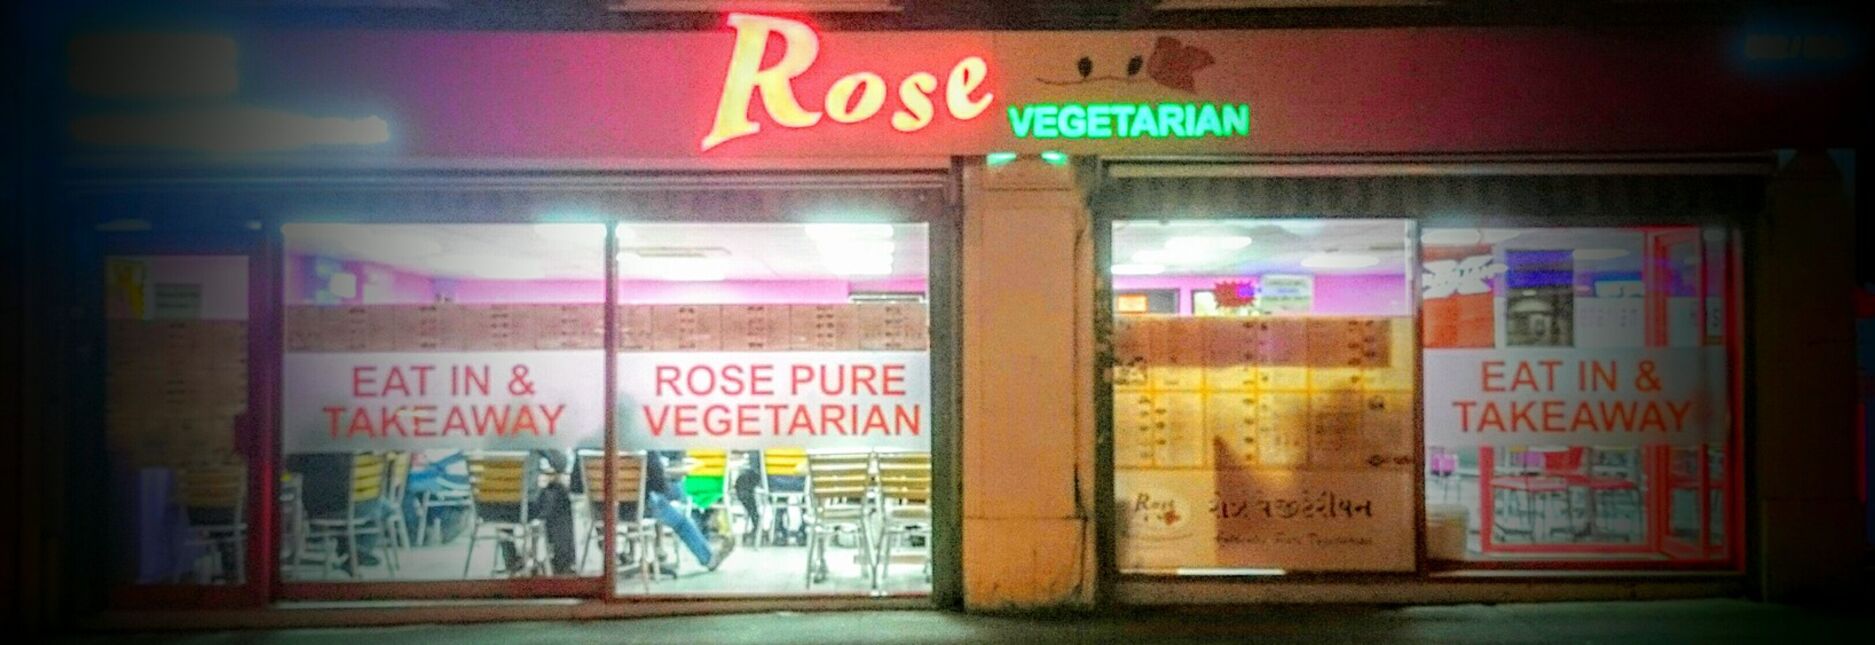 Rose Vegetarian